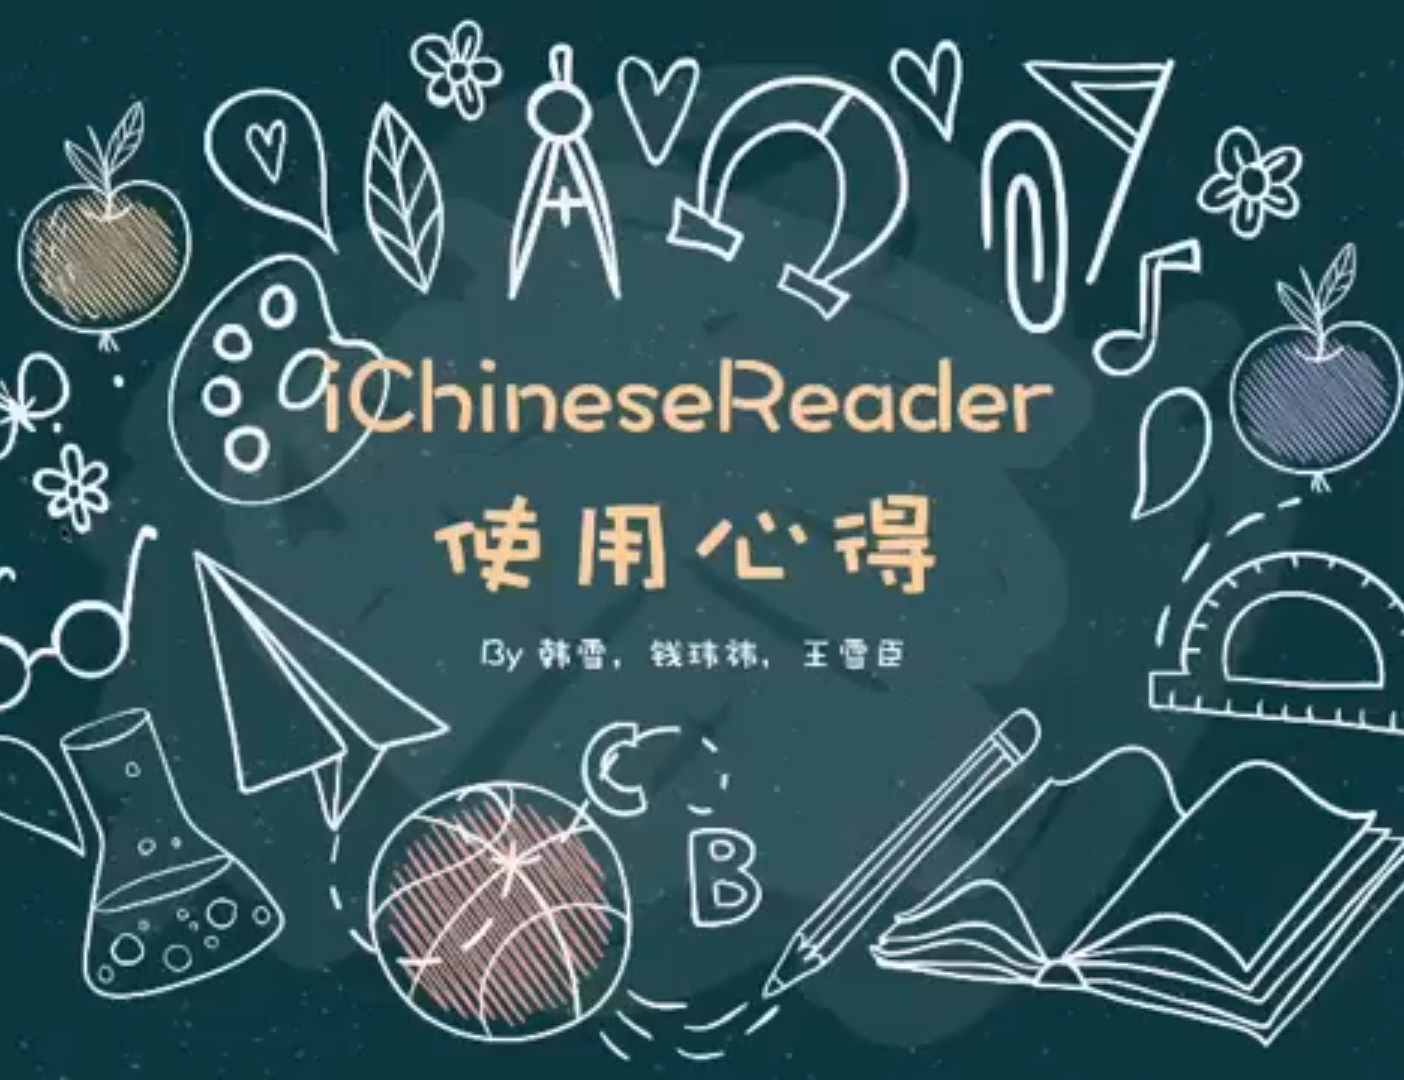 🚩Video Sharing 📀 明尼唐卡公立学区沉浸式中文教学分享